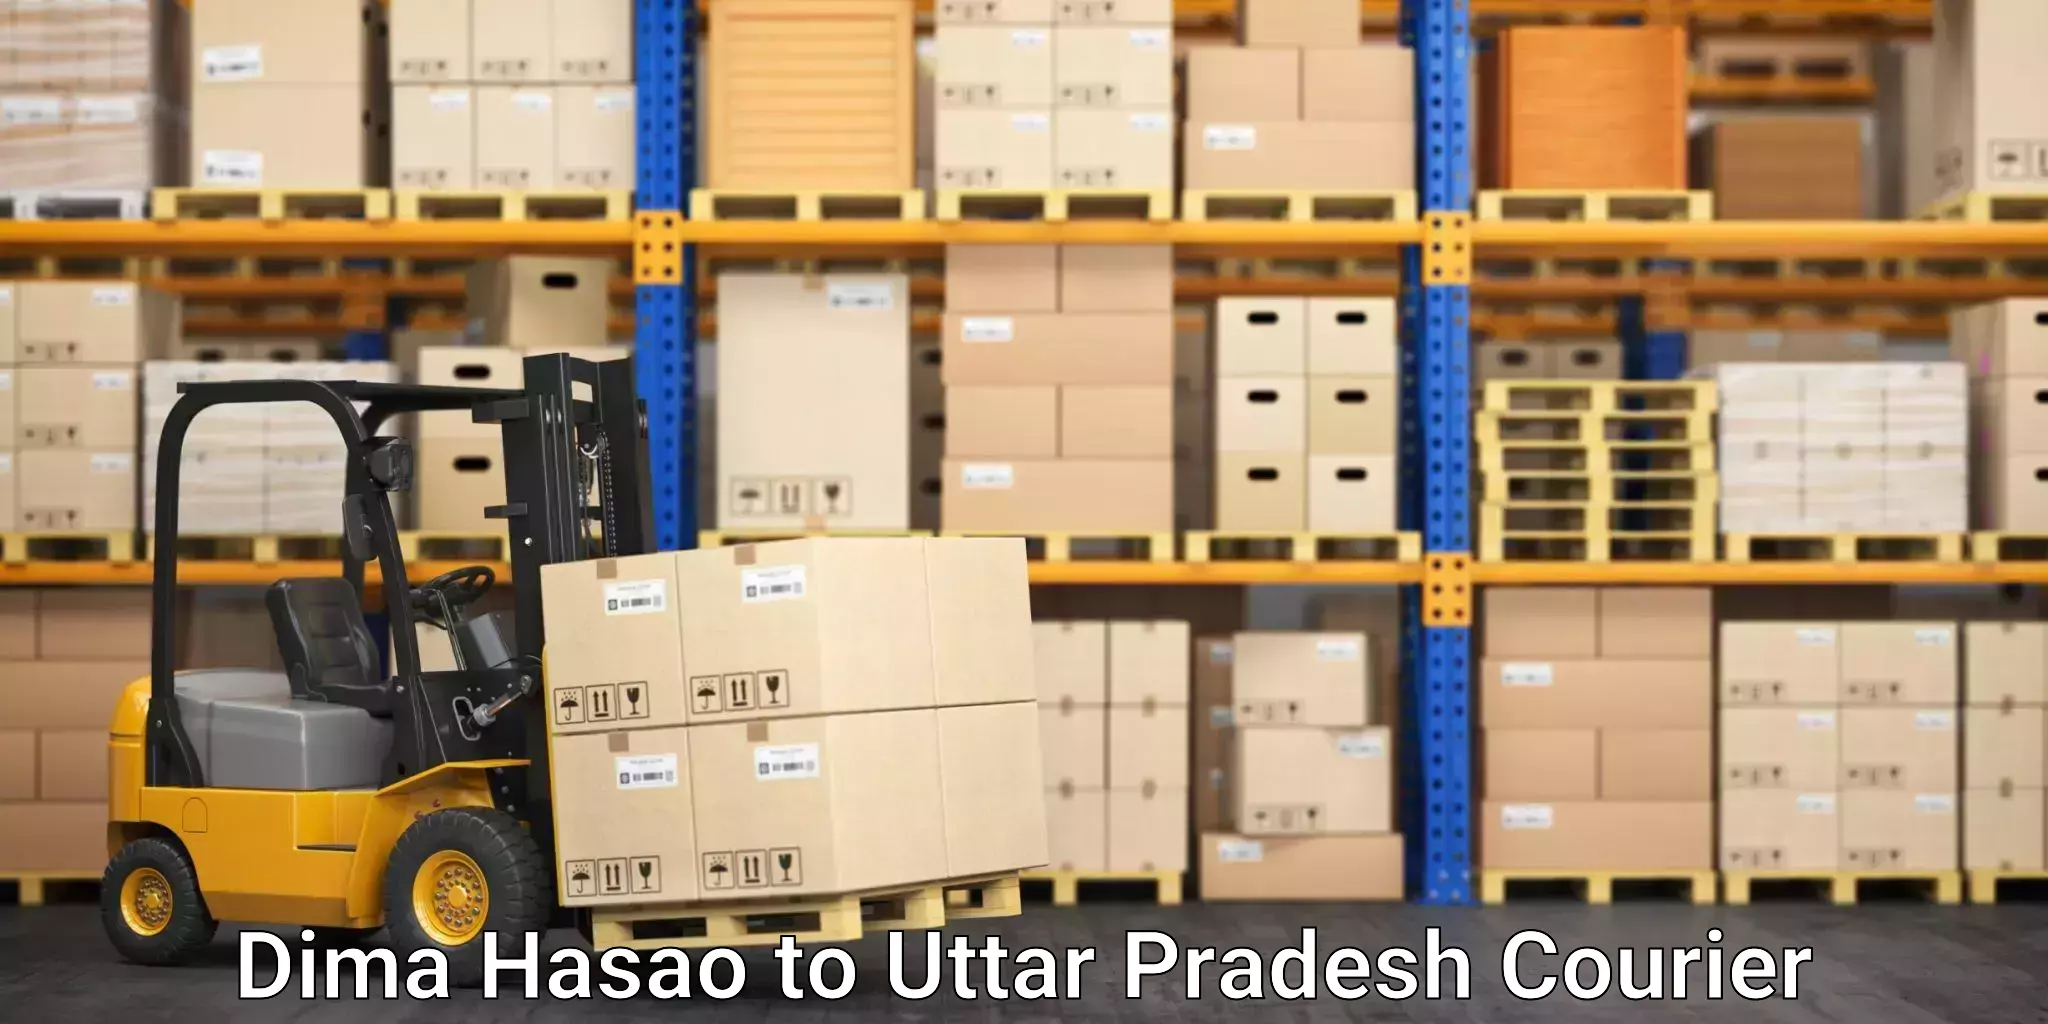 Advanced shipping network Dima Hasao to Varanasi